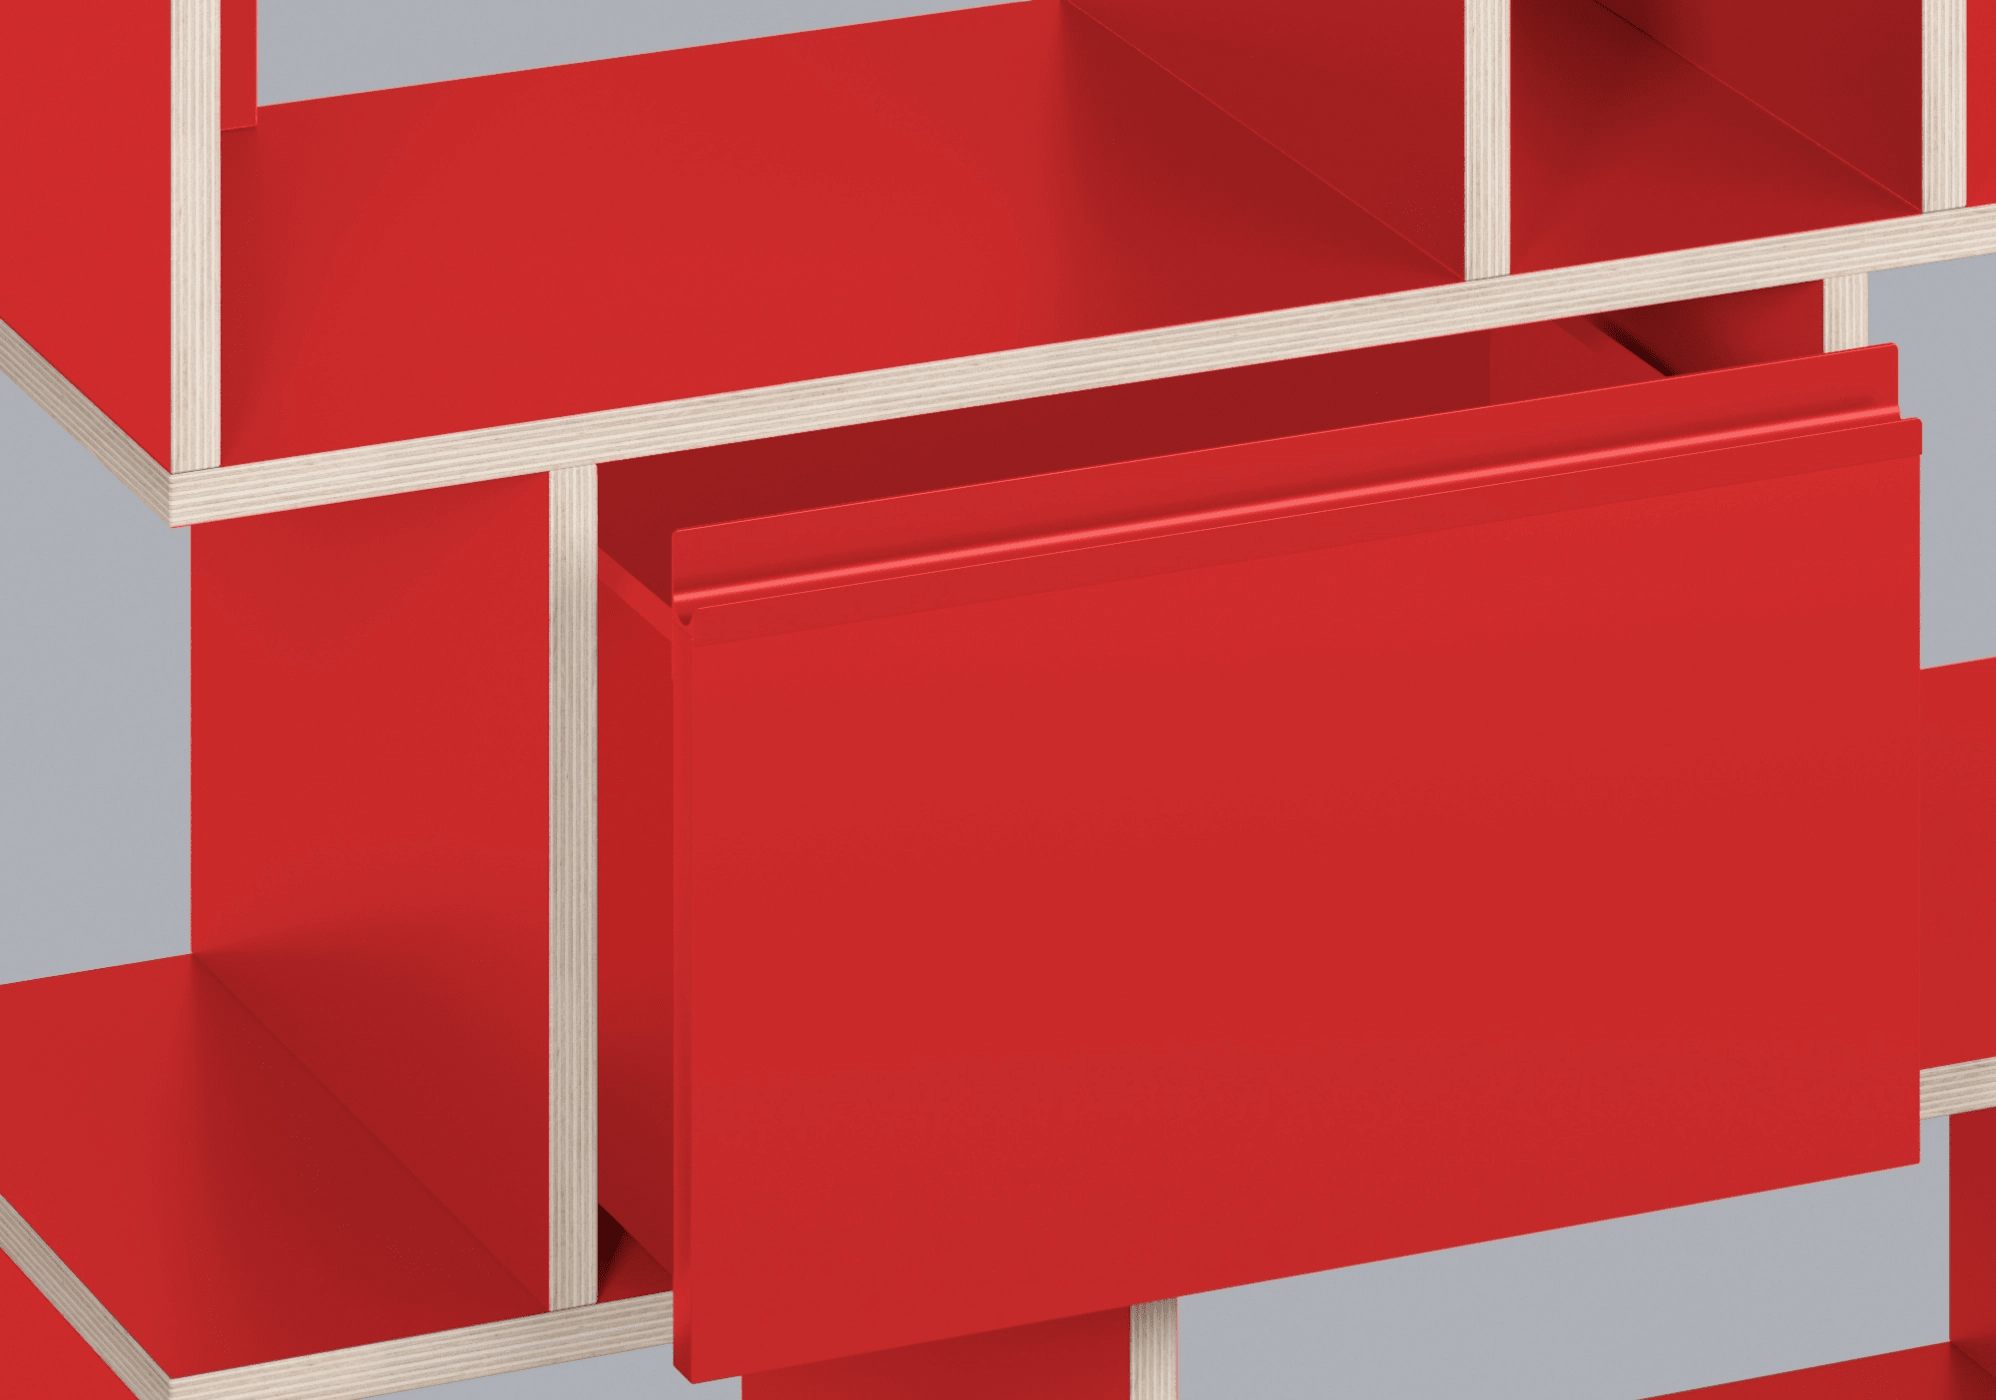 Bred Klassisk Röd Plywood 6-Lådor Byrå plywood - 220x83x32cm 8